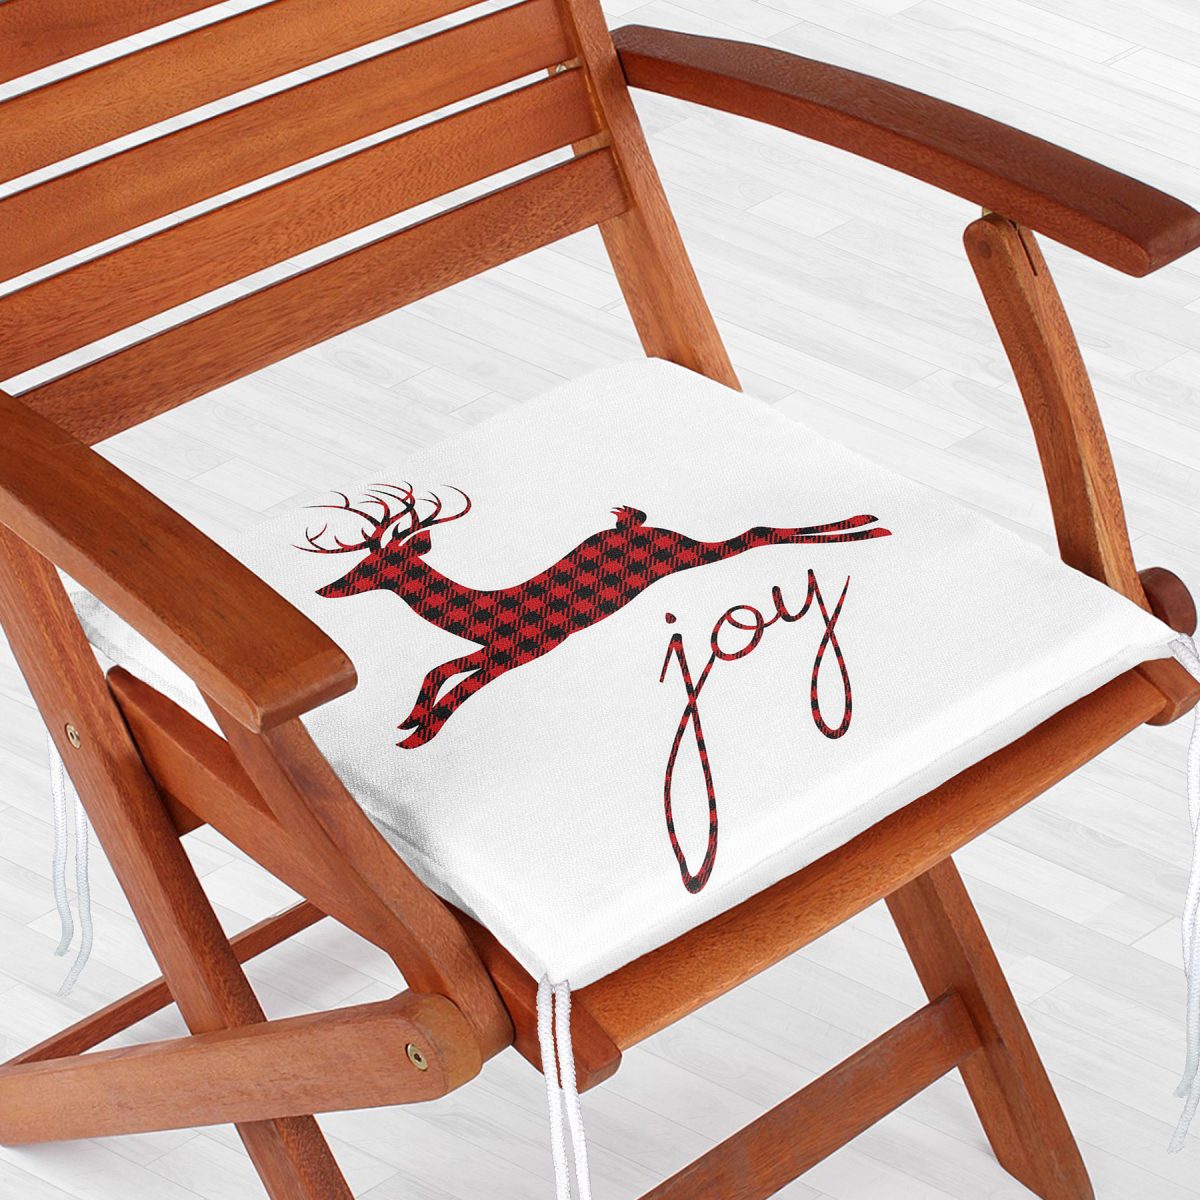 Joy Ekose Geyik Desenli Dekoratif Fermuarlı Sandalye Minderi Realhomes